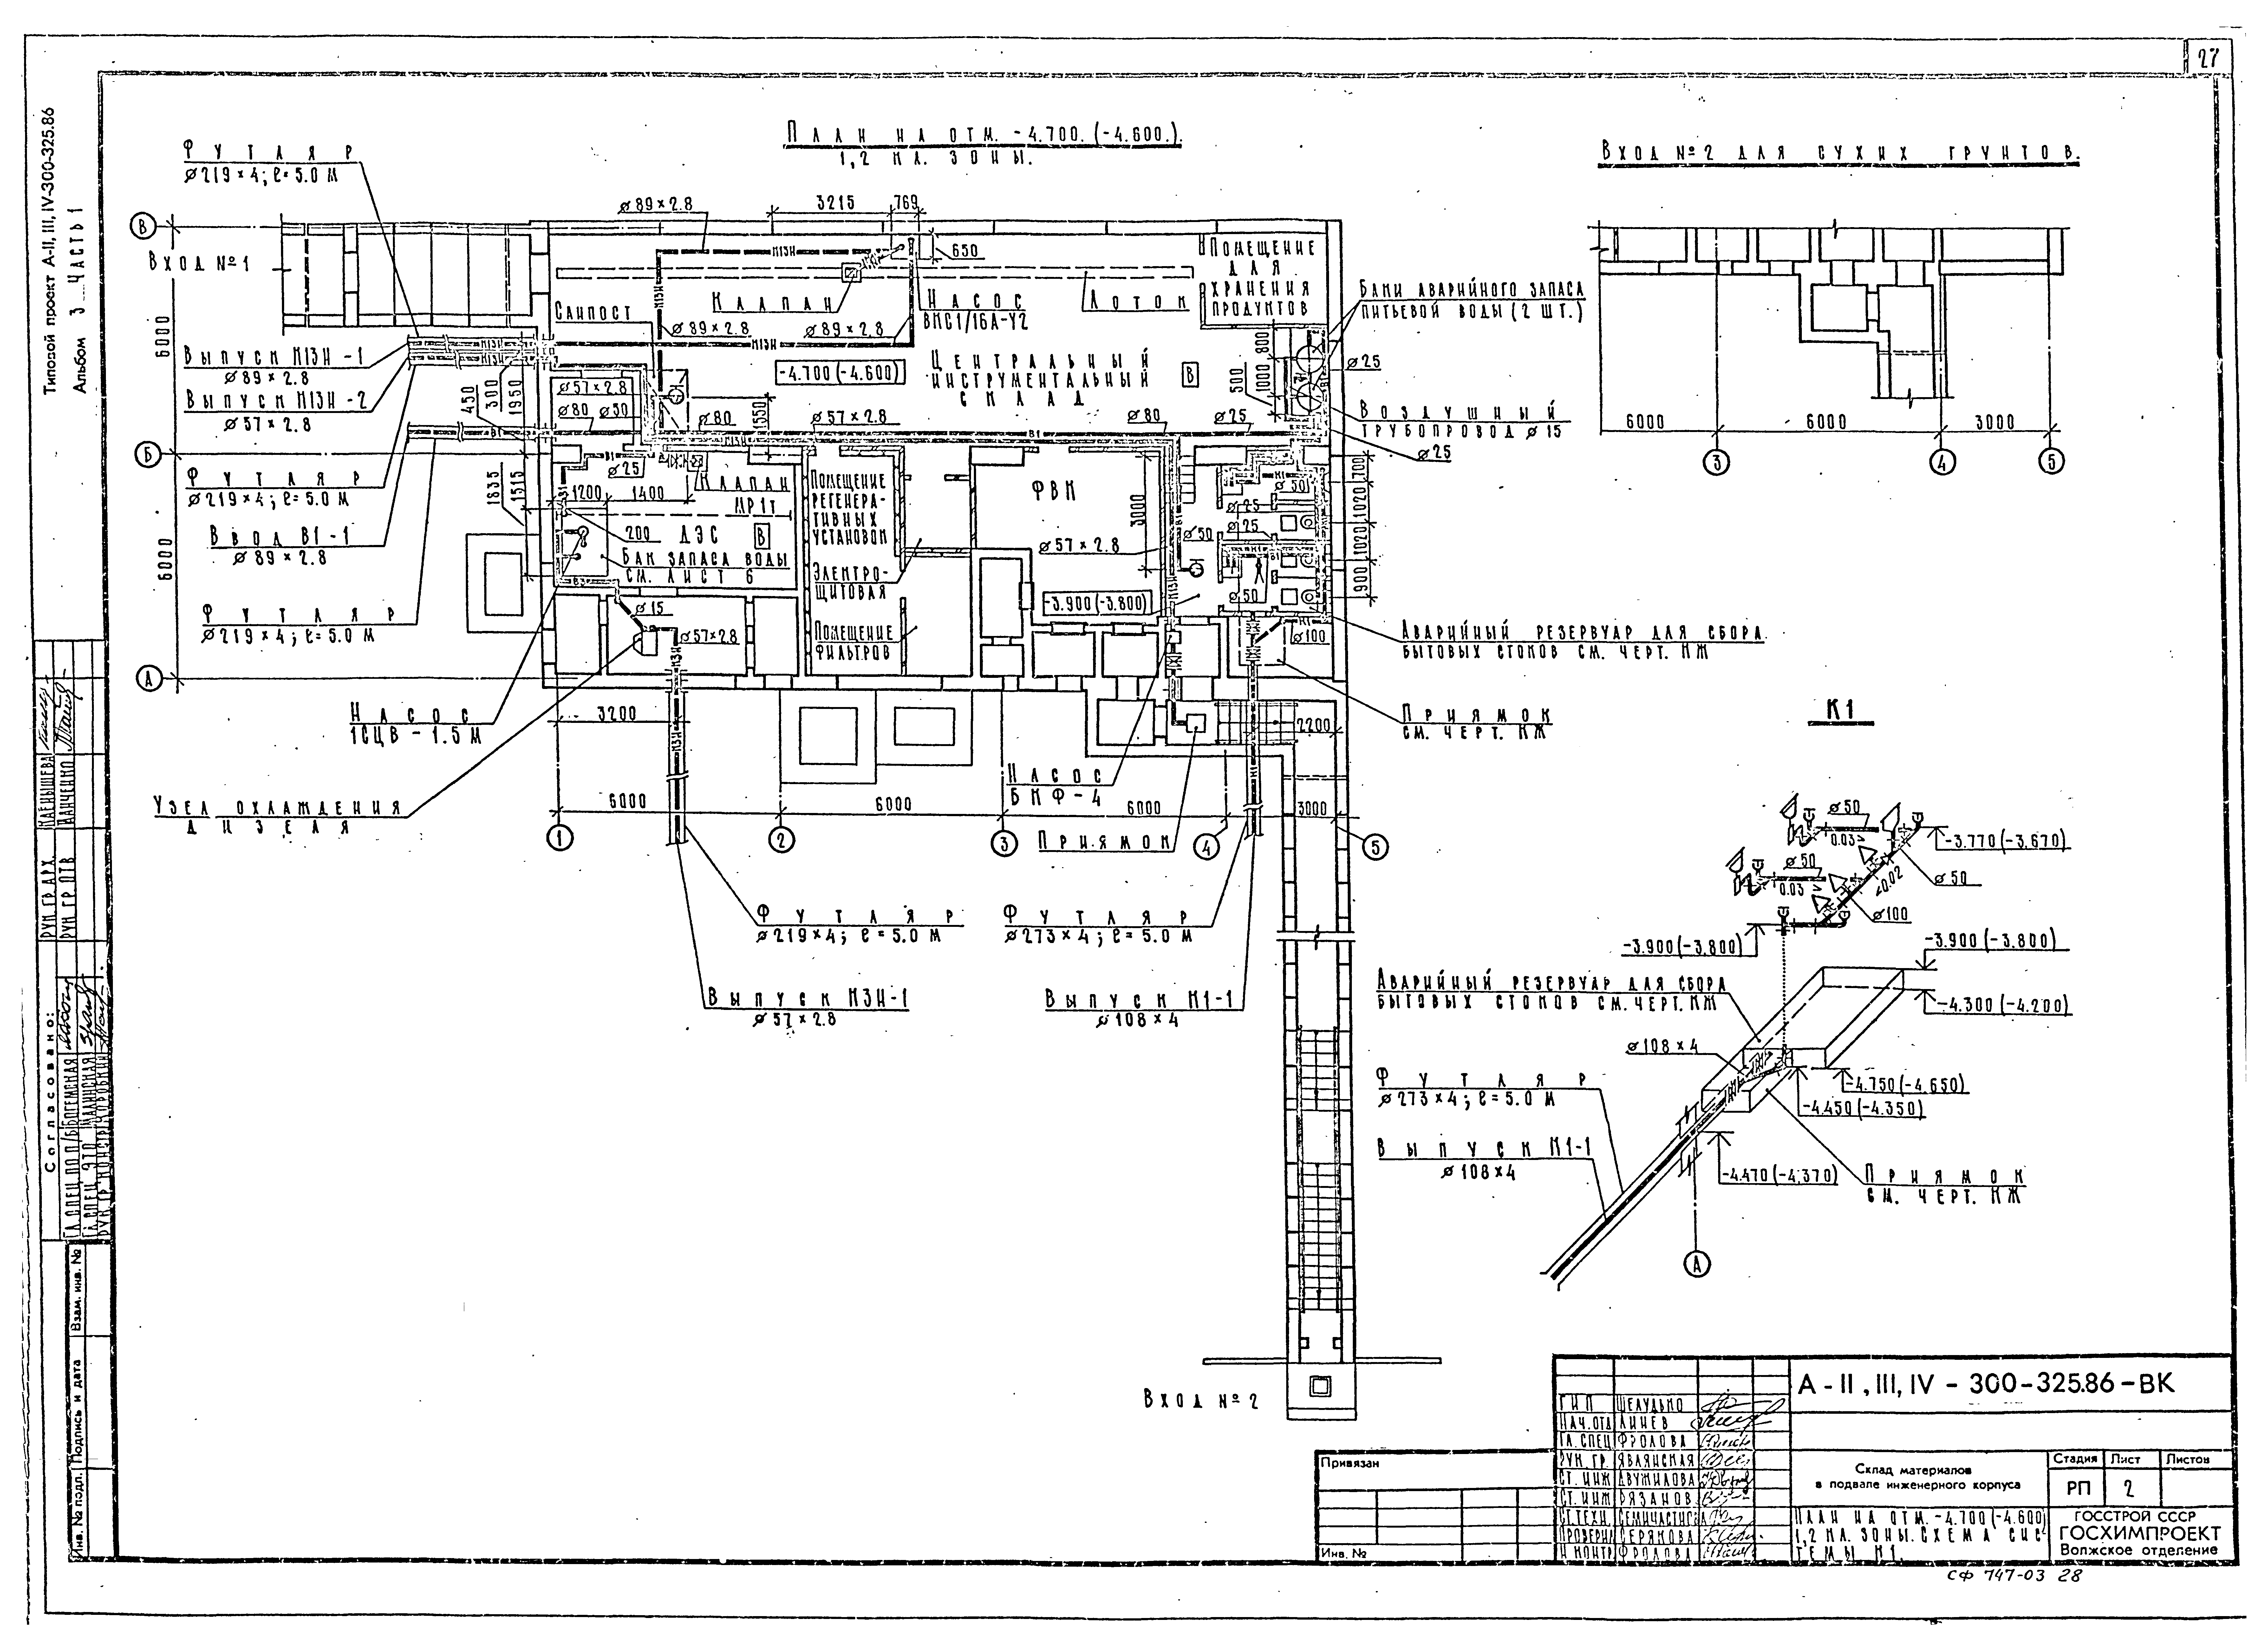 Типовой проект А-II,III,IV-300-325.86